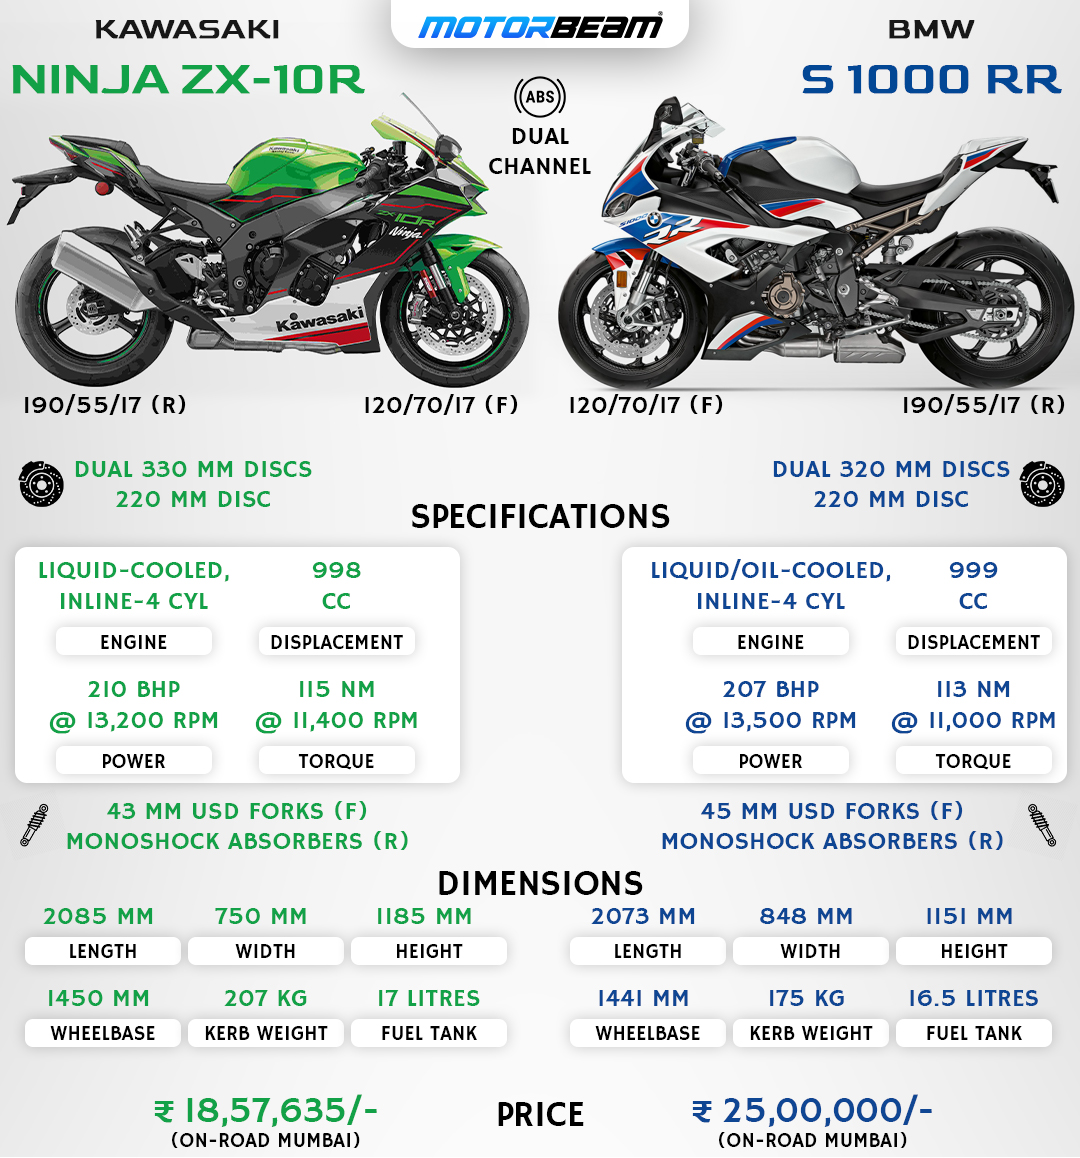 Ninja ZX-10R vs BMW S 1000 RR Comparison |